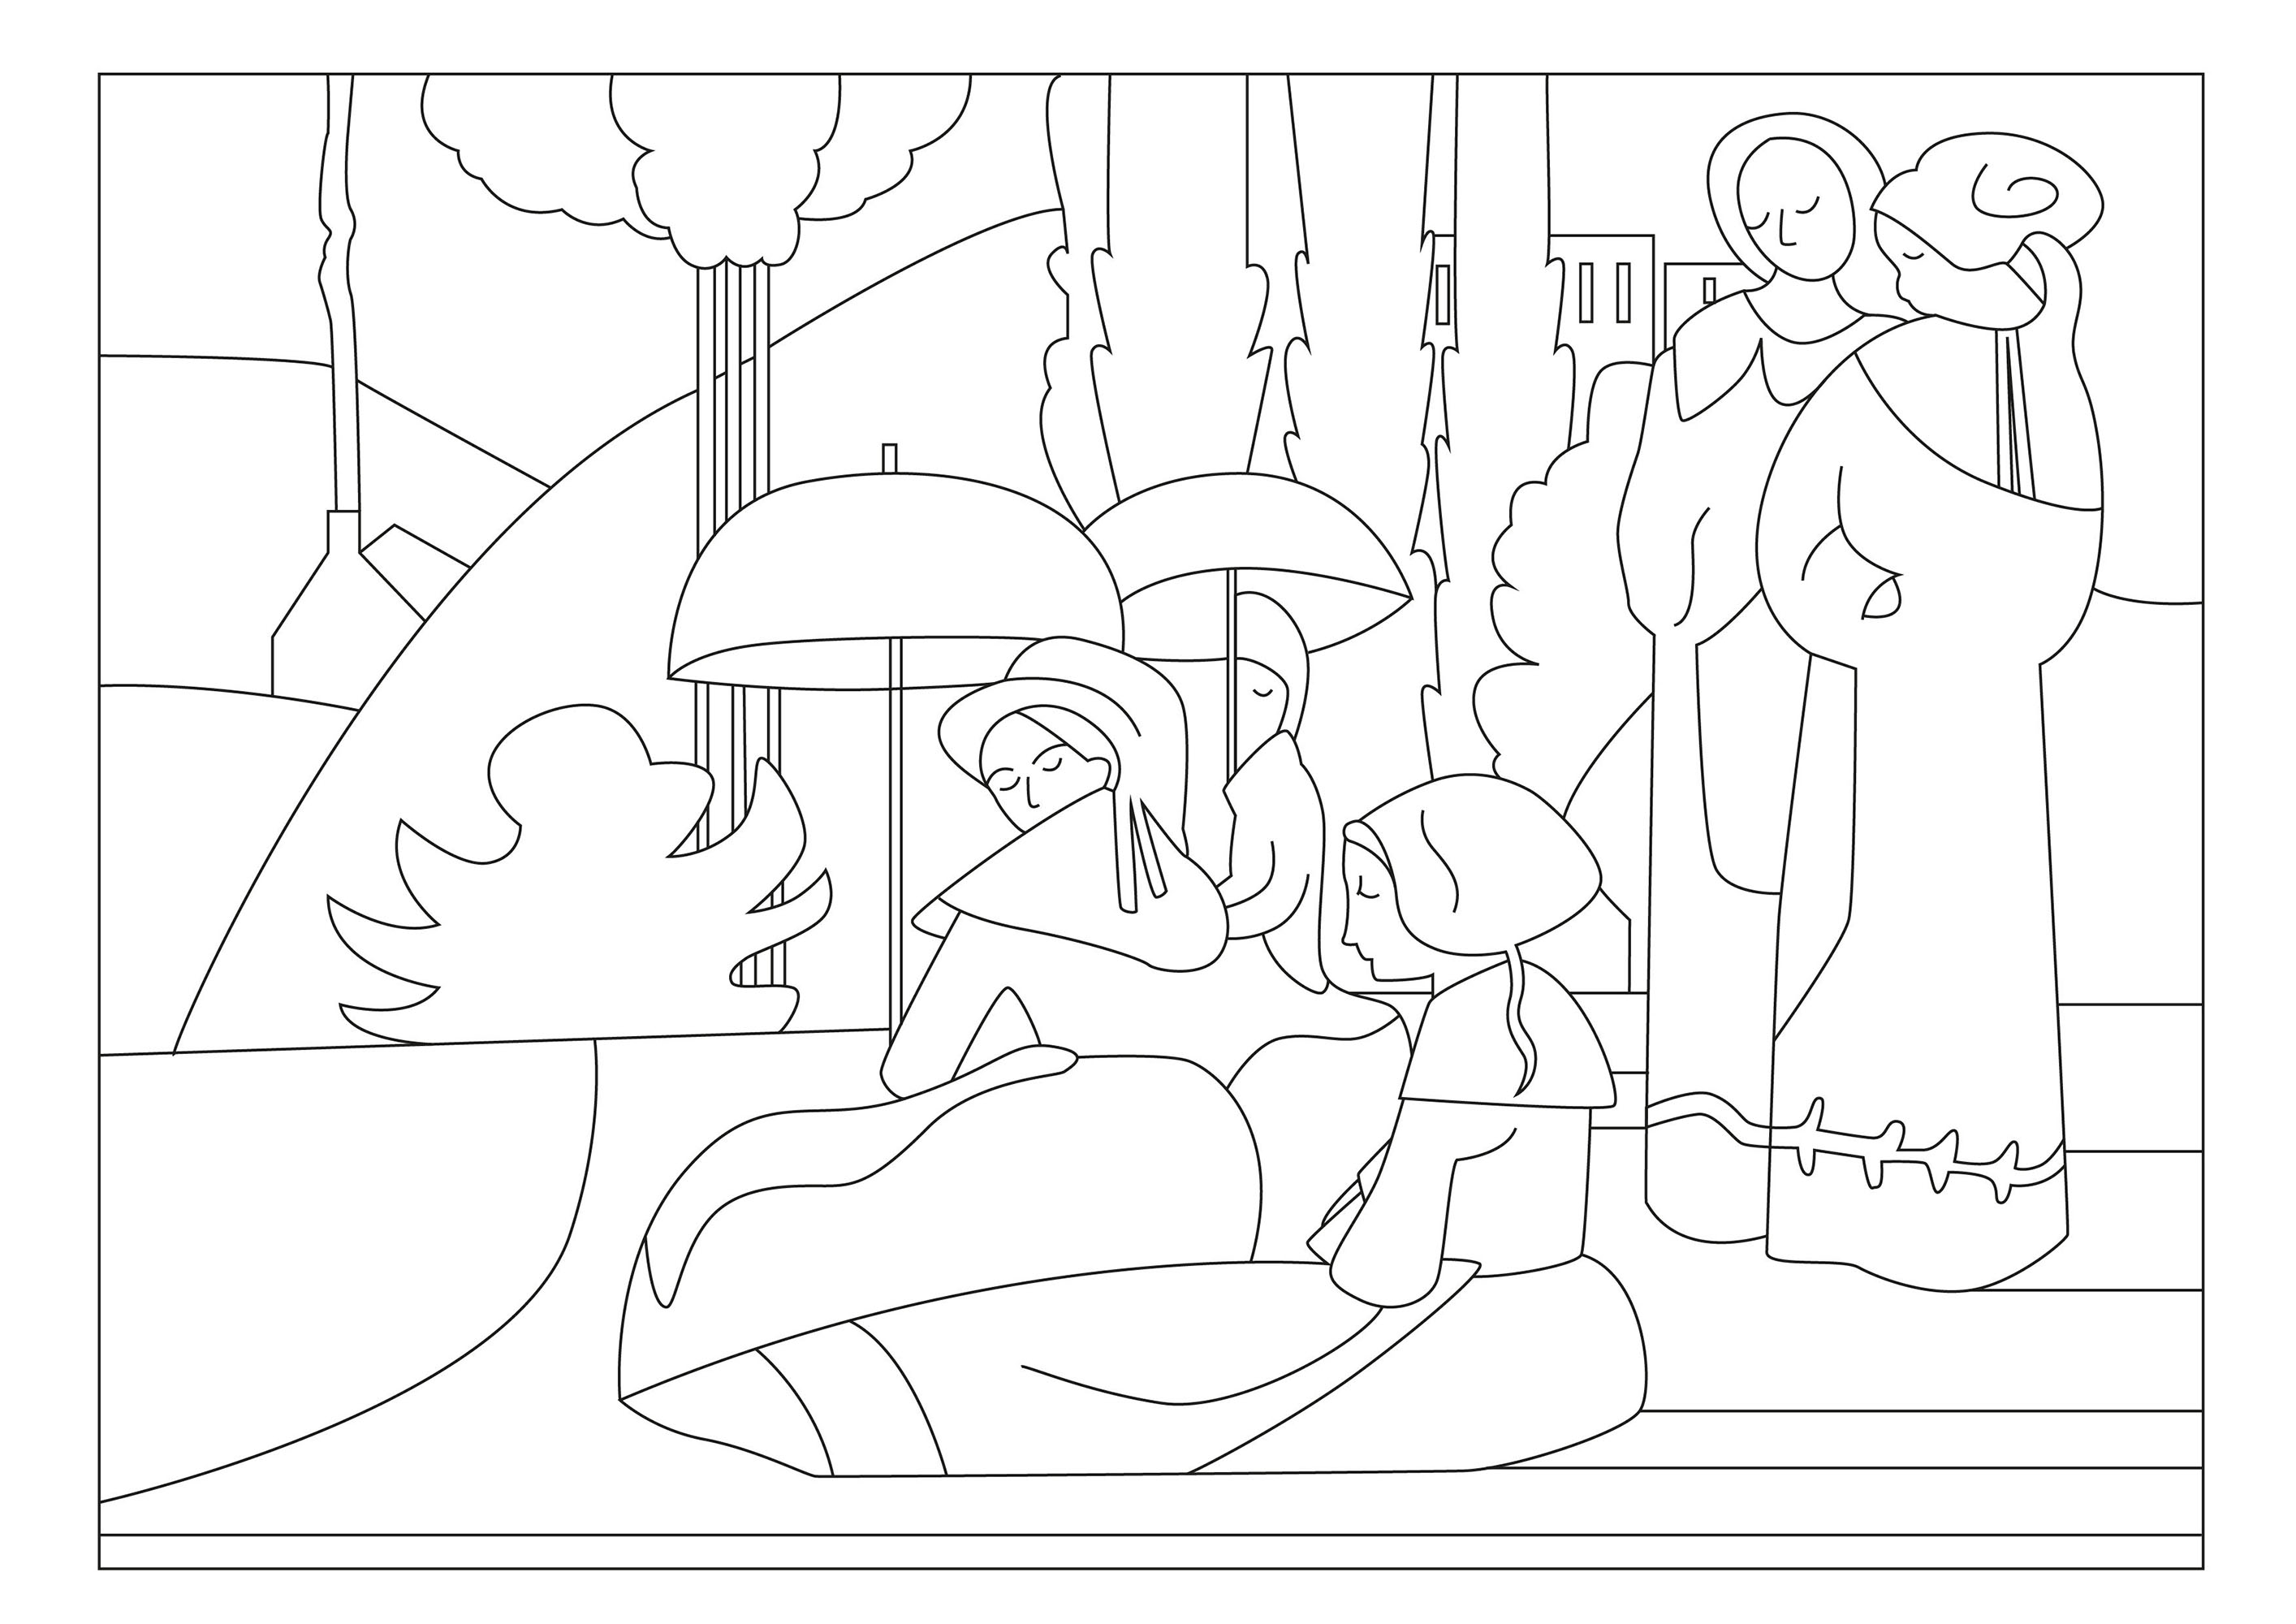 Colorazione basata sul dipinto Donne bretoni con ombrello (1892) di Emilie Bernard. Il dipinto raffigura un gruppo di donne bretoni, vestite con i loro costumi tradizionali, che passeggiano sotto il sole, ognuna con un ombrello in mano per proteggersi dai raggi cocenti, Artista : Gaelle Picard